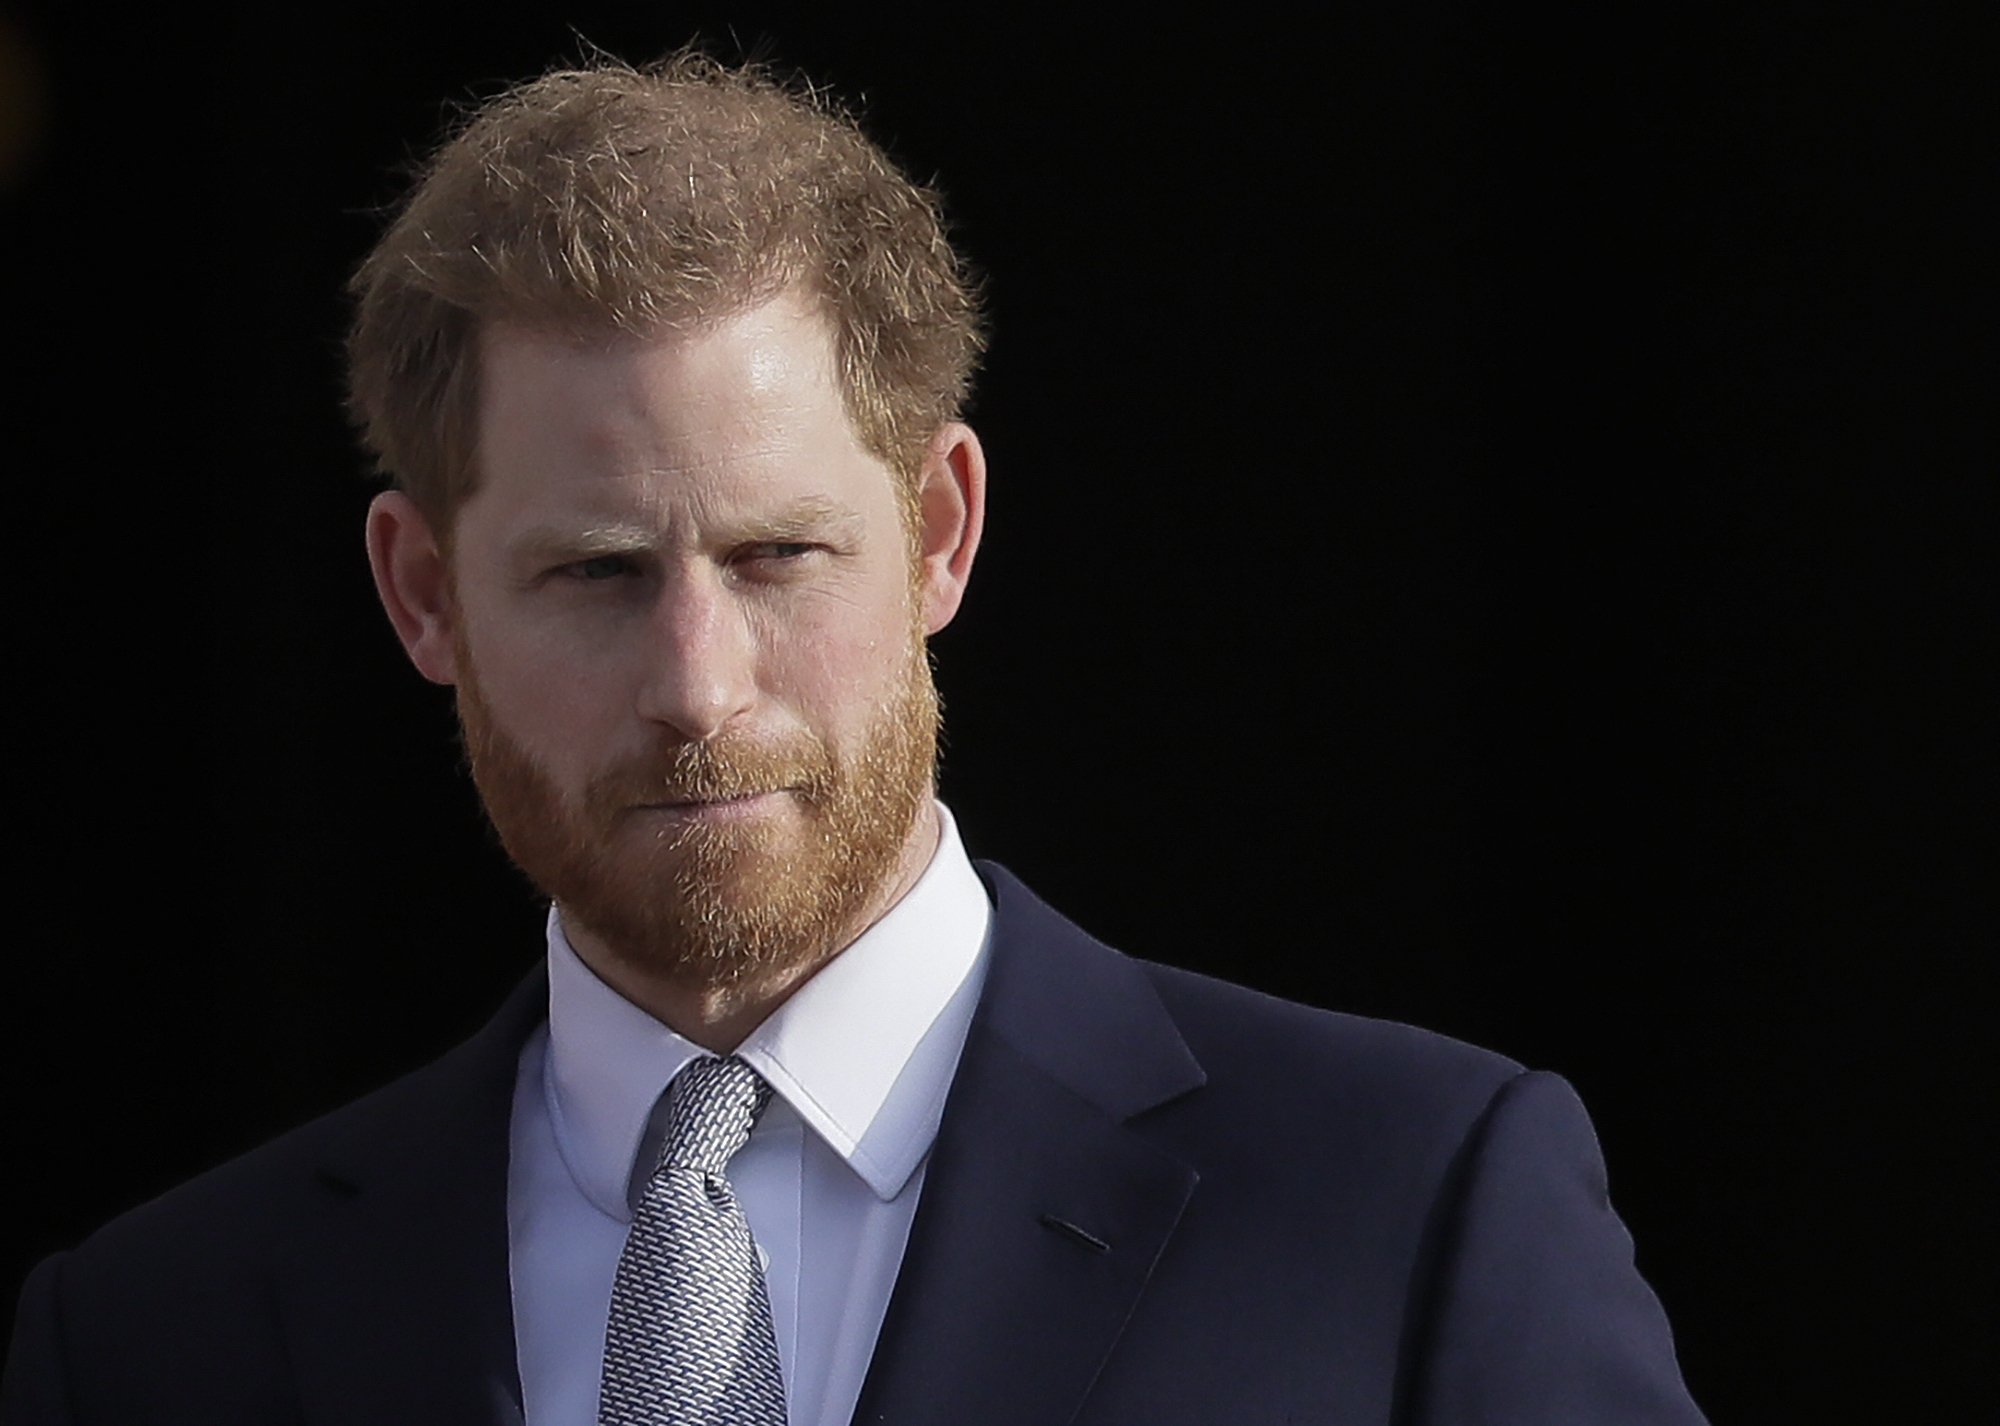 Prințul Harry s-a bazat pe moștenirea lăsată de mama sa, după ce casa regală i-a întrerupt sprijinul financiar în 2020